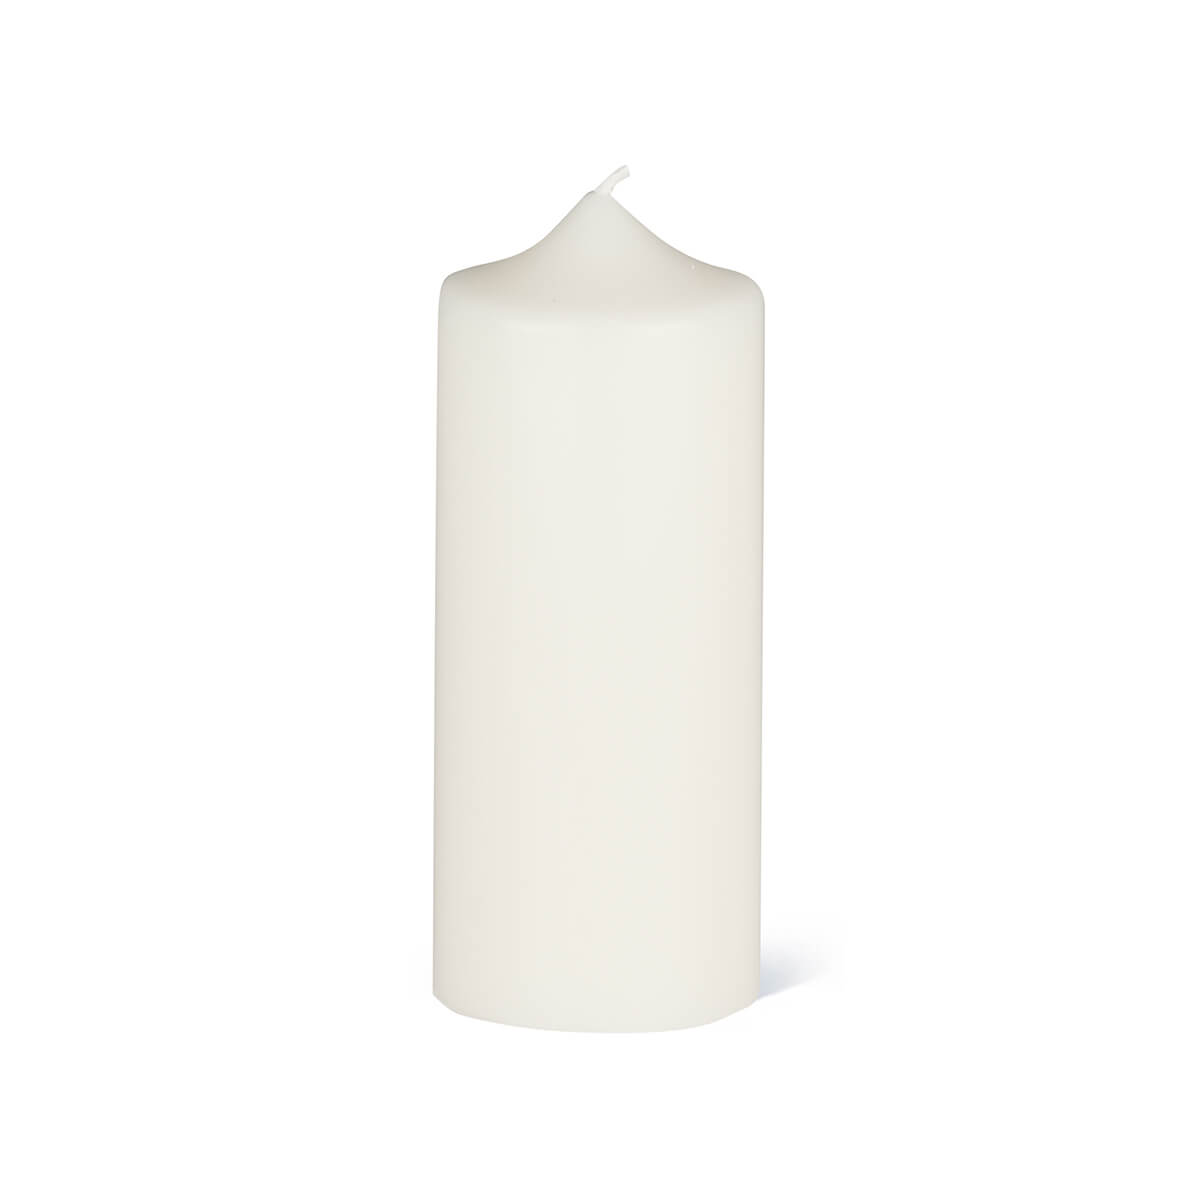 Giessform für Kerzen - Zylinder 185/70 mm